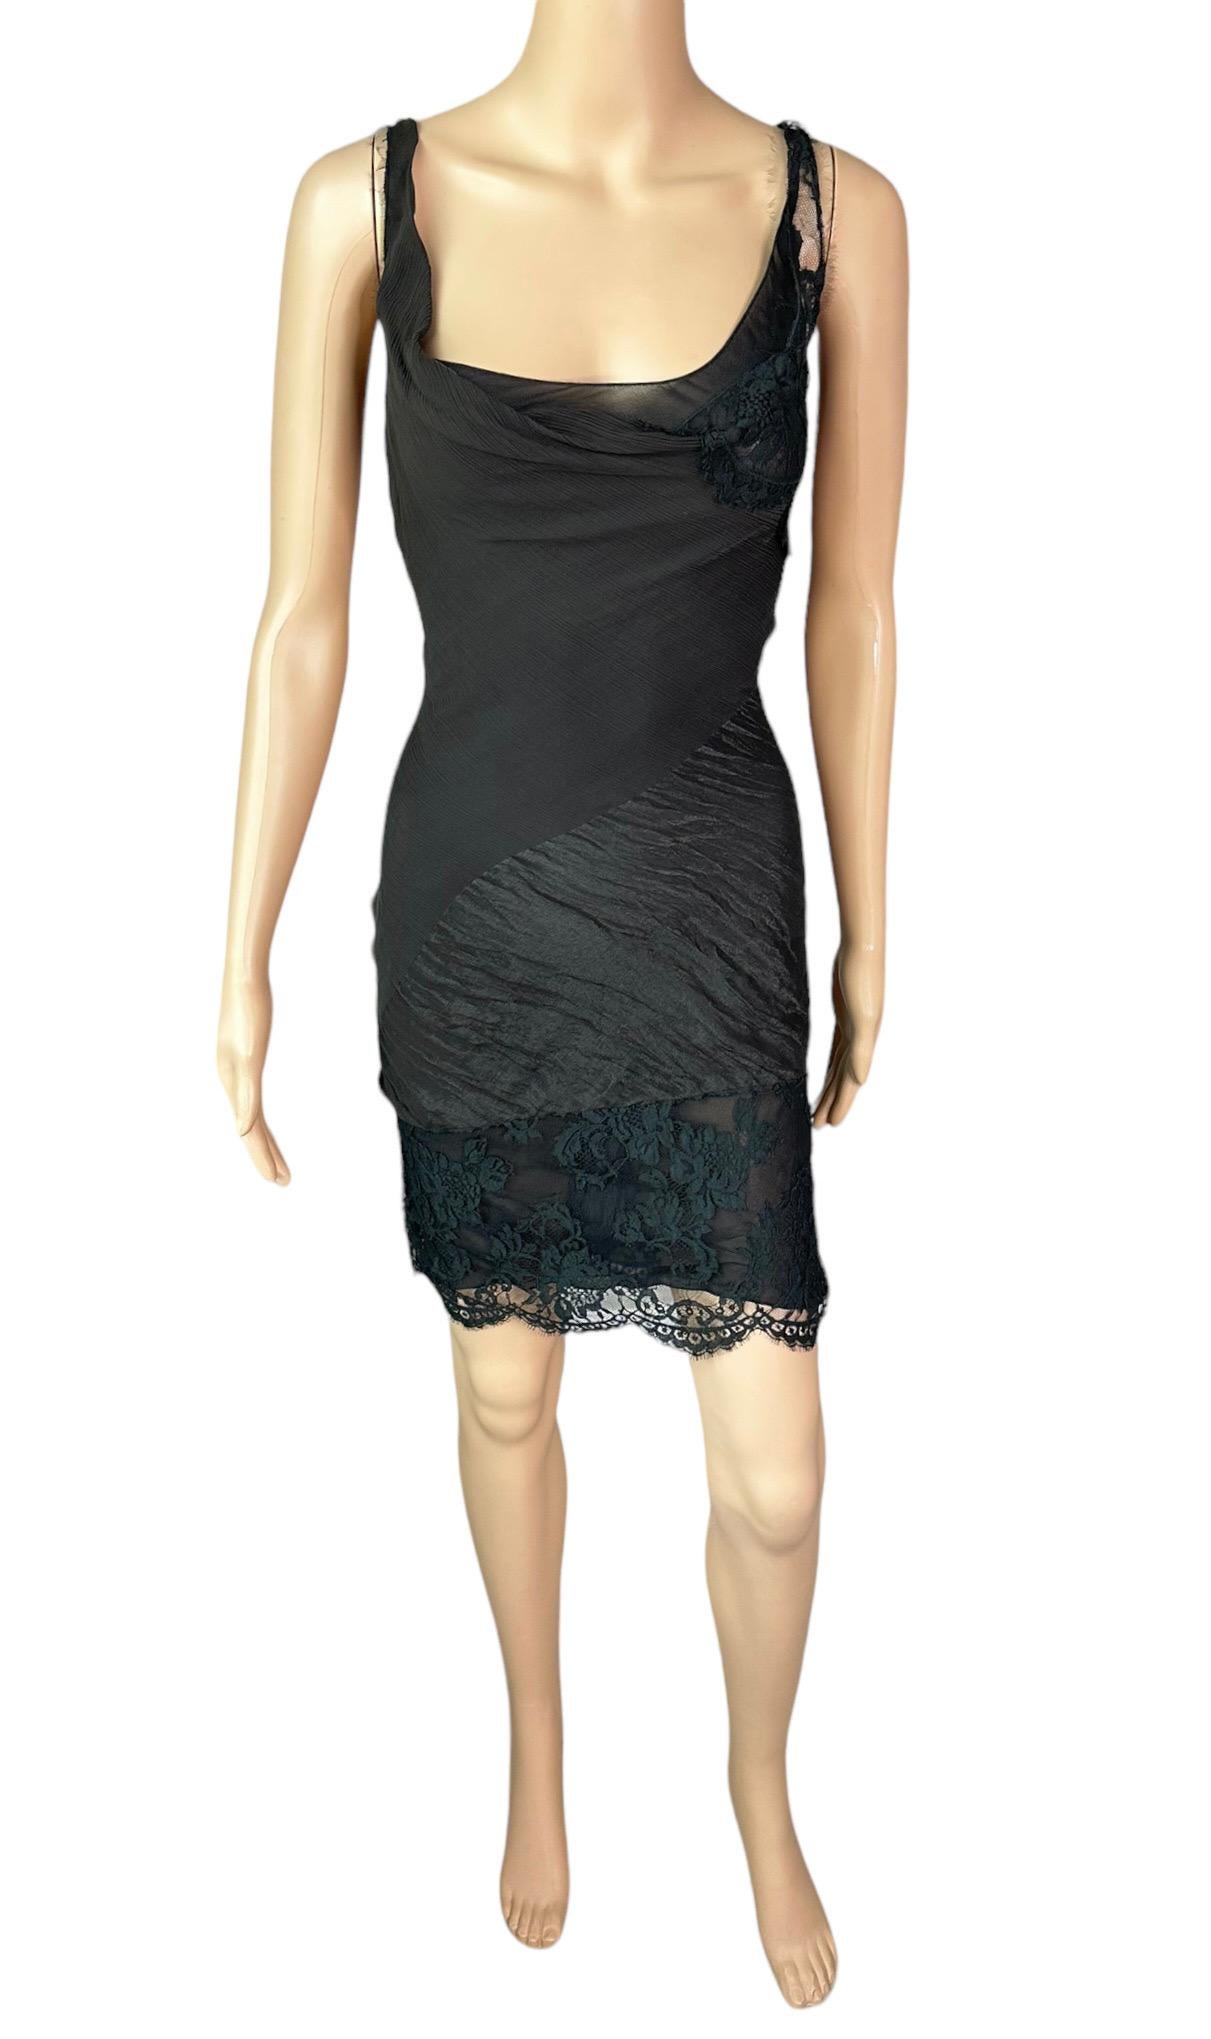 John Galliano F/W 2006 Semi-Sheer Lace Knit Slip Black 2 Piece Mini Dress 6